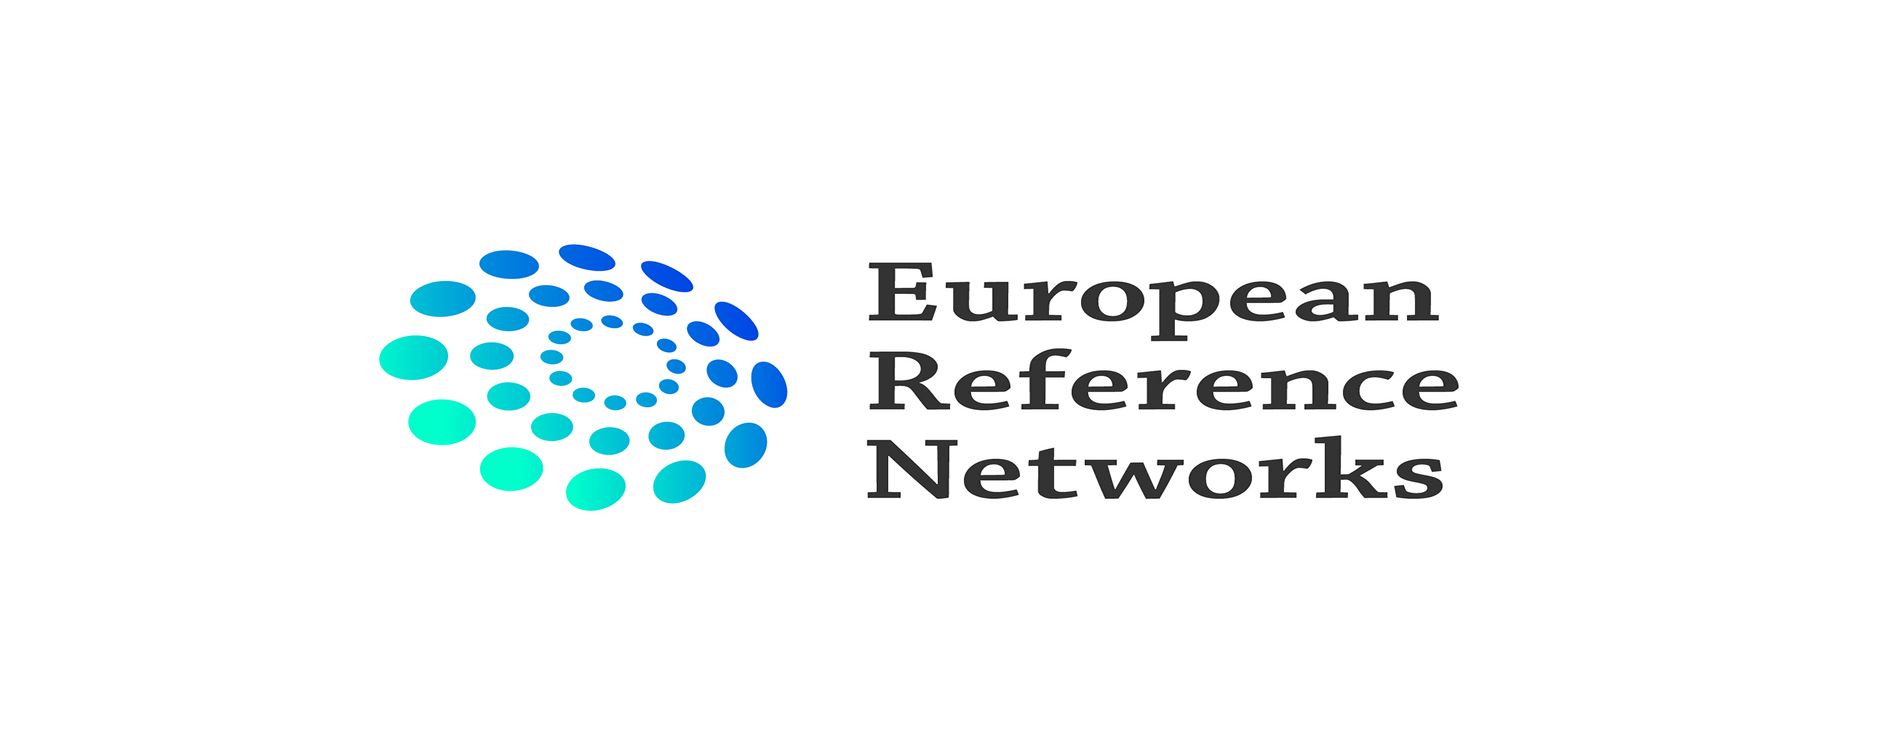 Bild zeigt Logo der Europäischen Referenznetzwerke